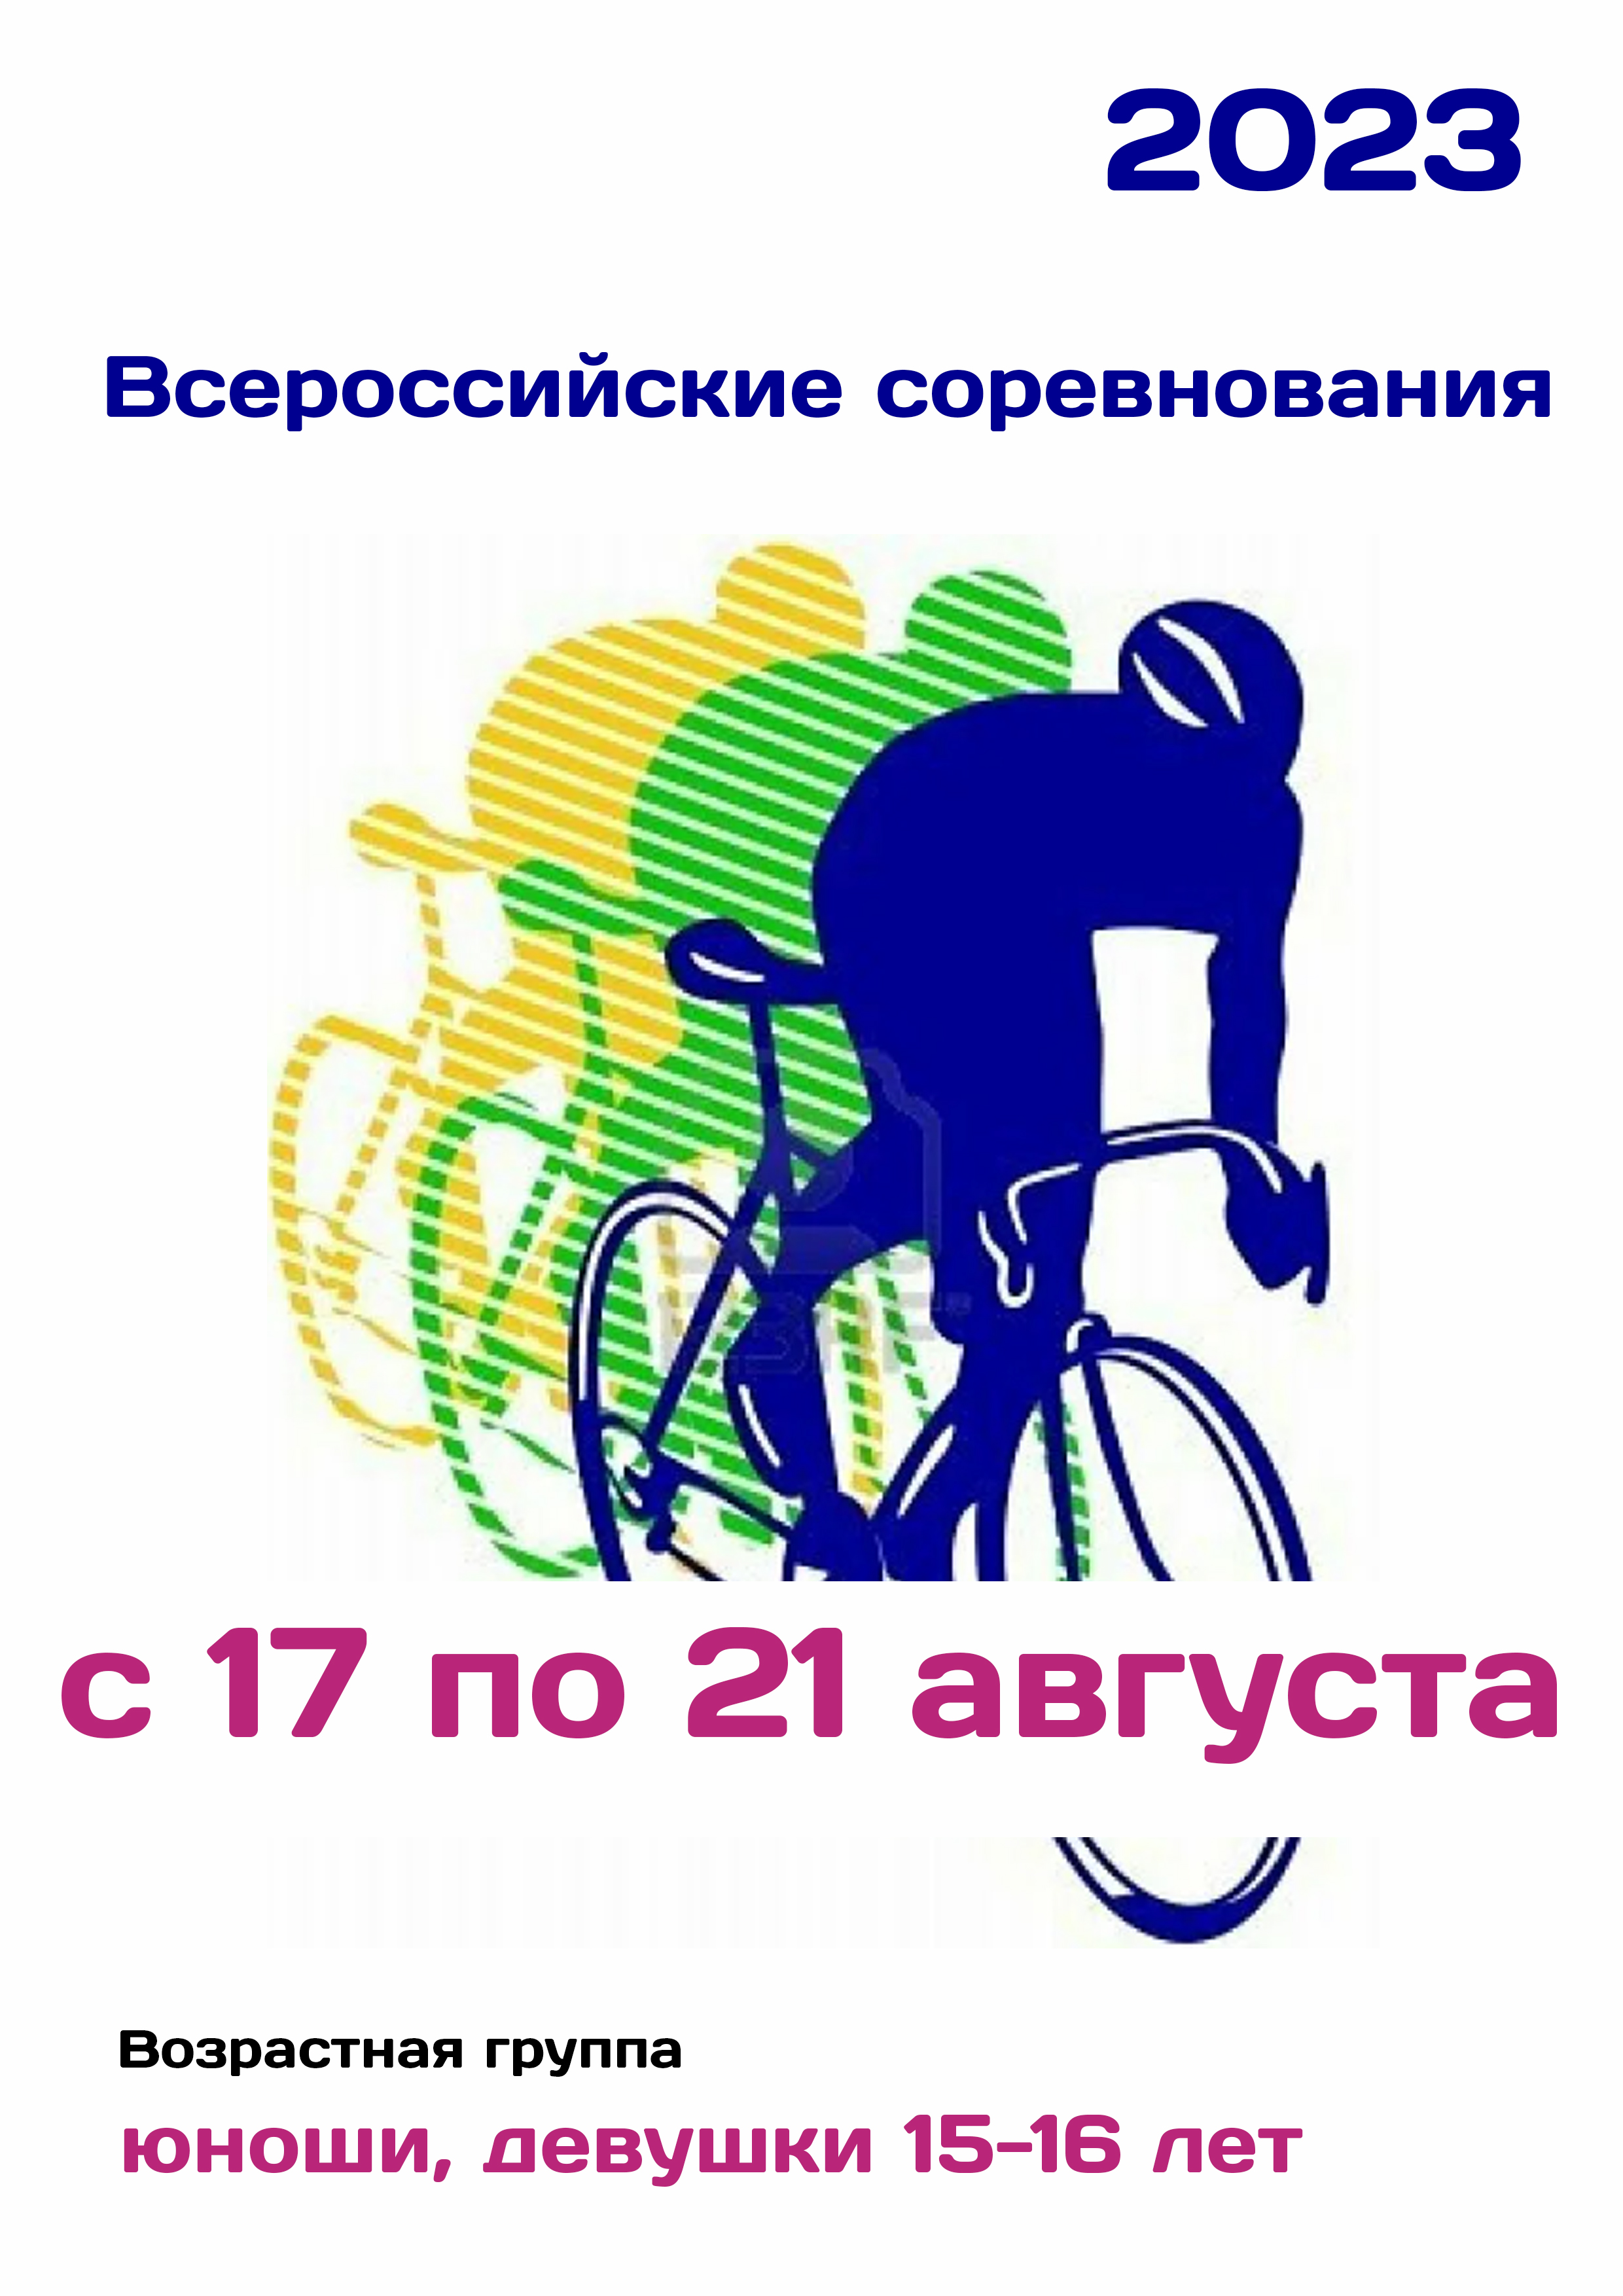 Всероссийские соревнования по велоспорту 17  օգոստոսի
 2023  տարի
 